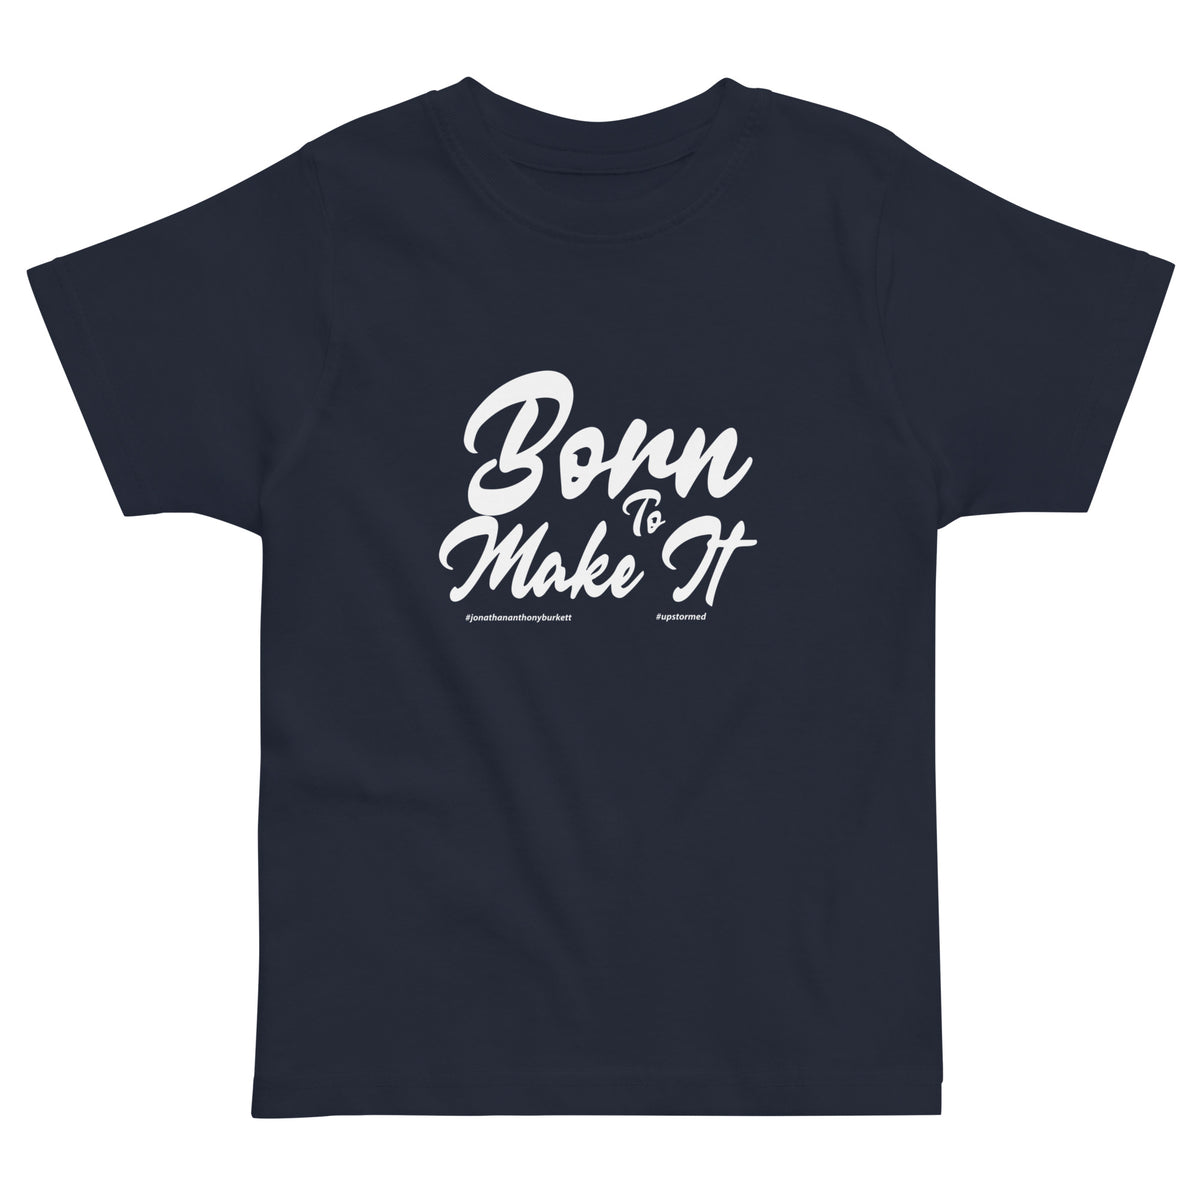 Born to Make It Upstormed Kids T-Shirt